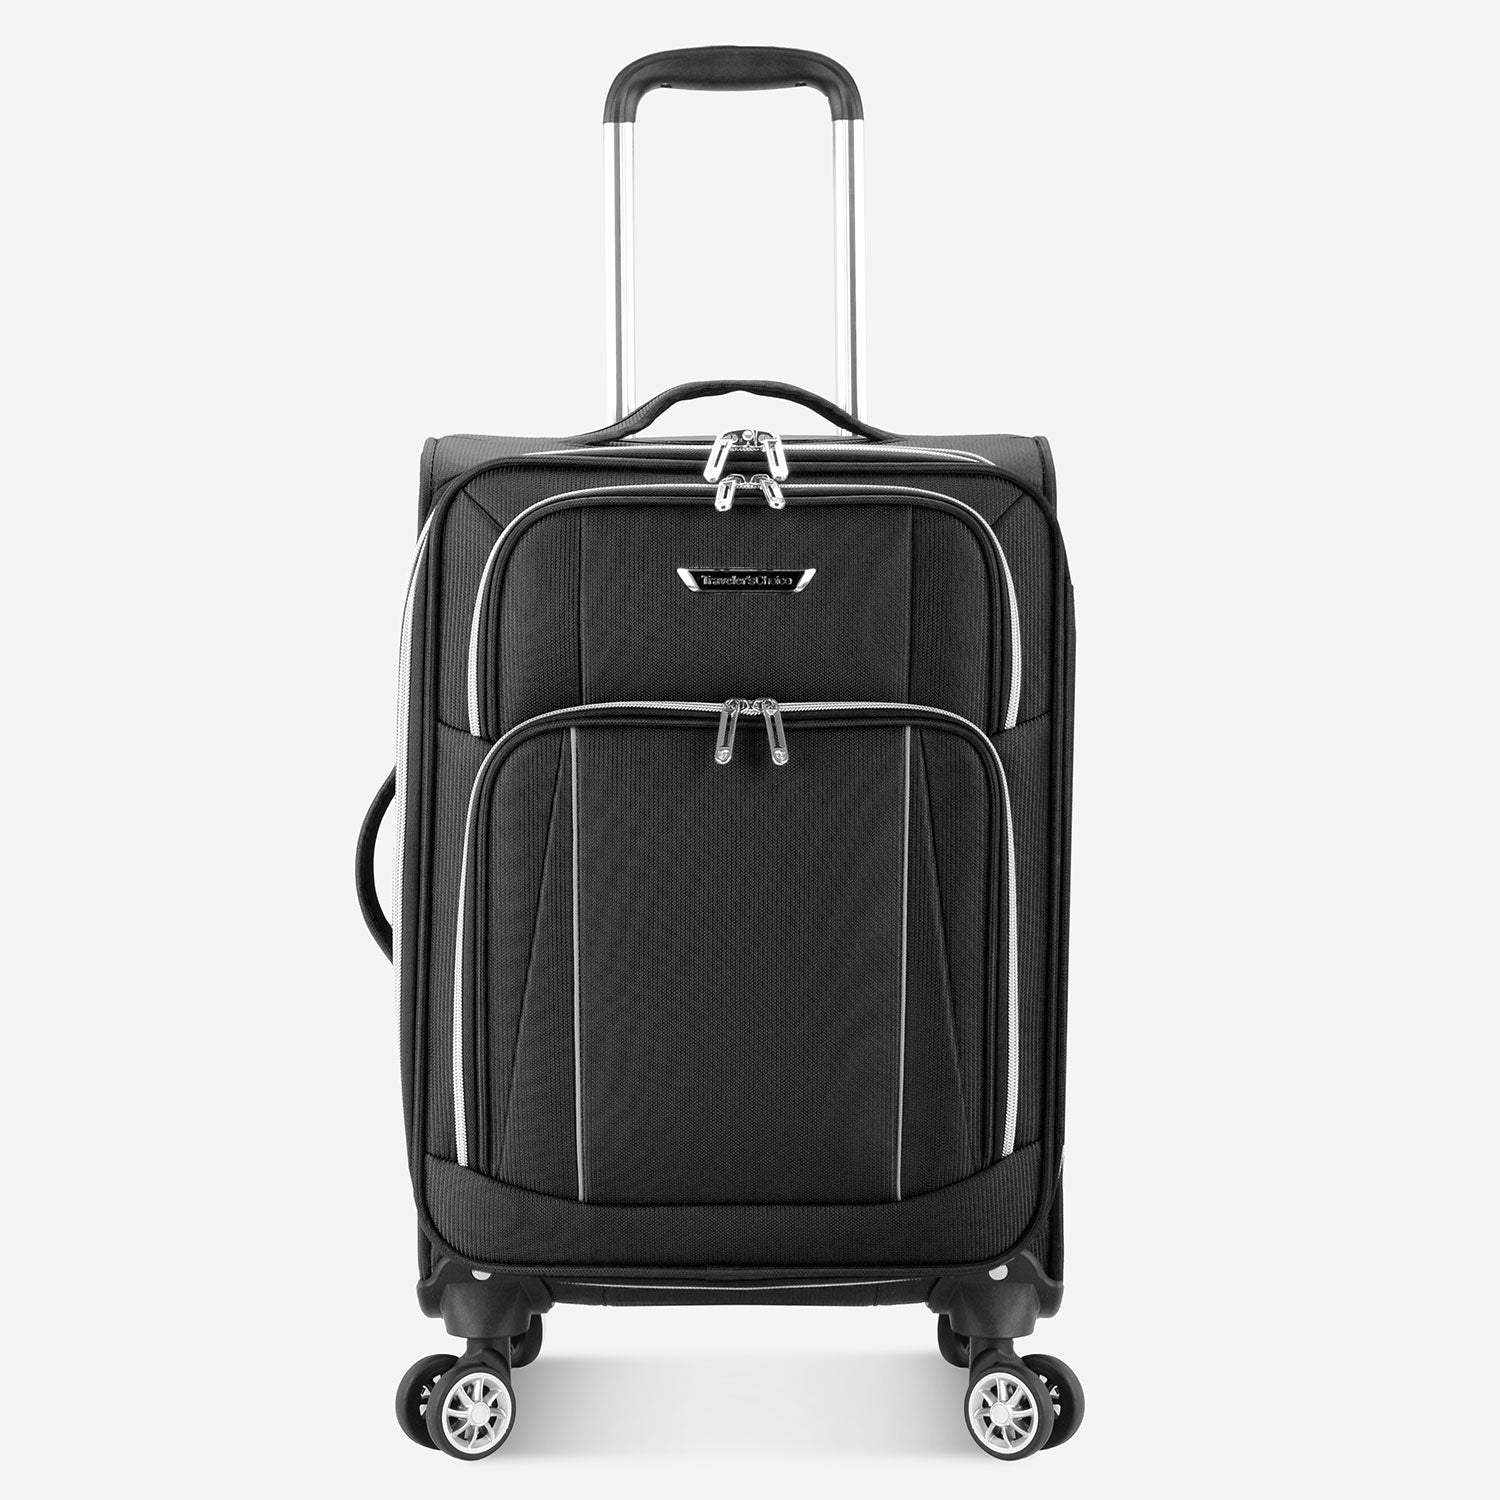 Lares 3-Piece Softside Spinner Luggage Set